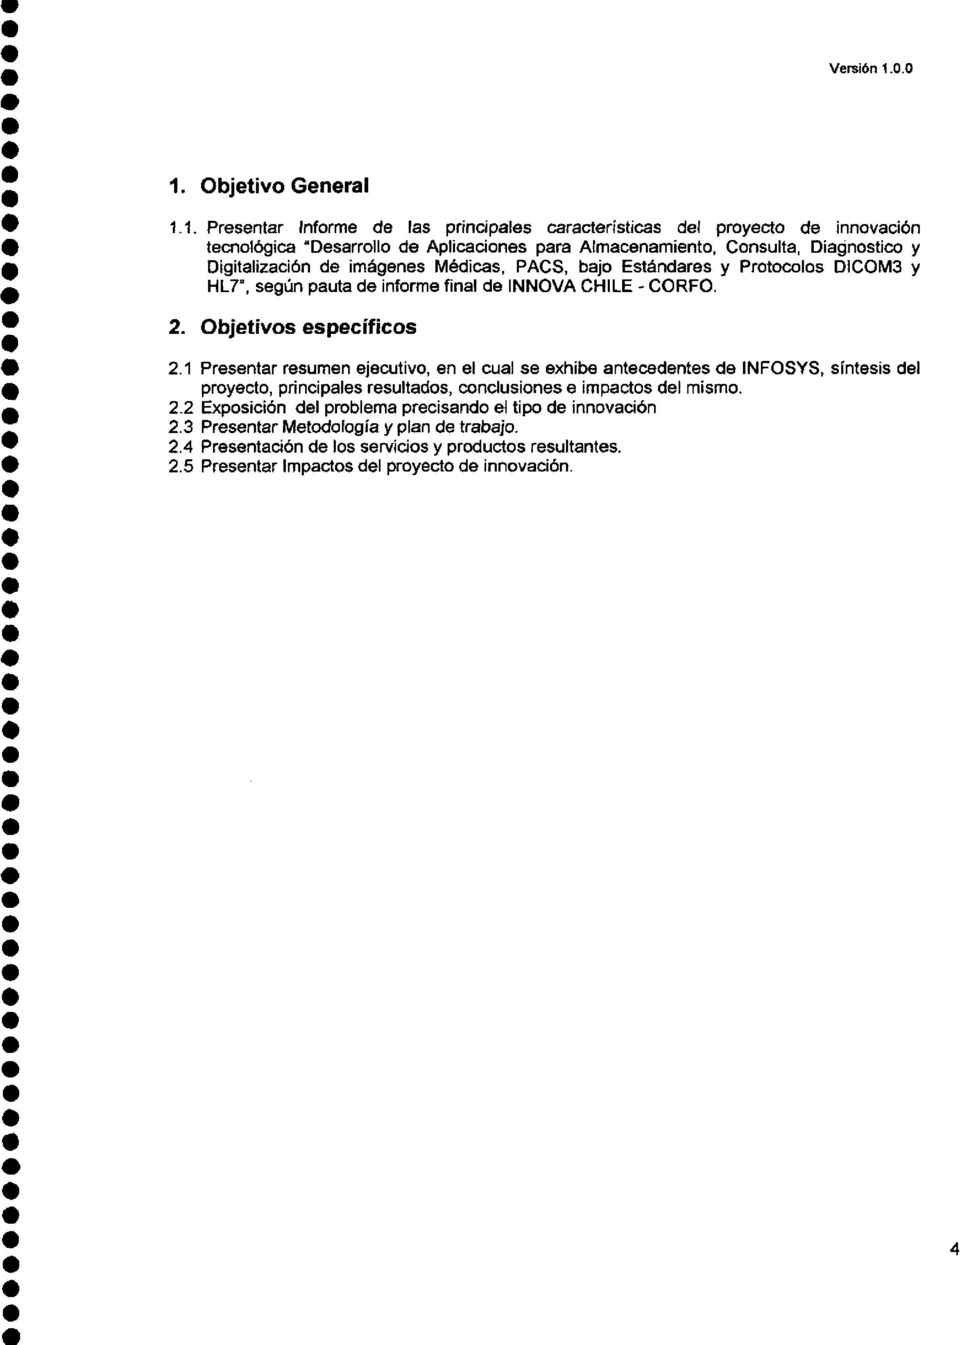 de imágenes Médicas, PACS, bajo Estándares y Protocolos DICOM3 y HL7", según pauta de informe final de INNOVA CHILE- CORFO. 2. Objetivos específicos 2.